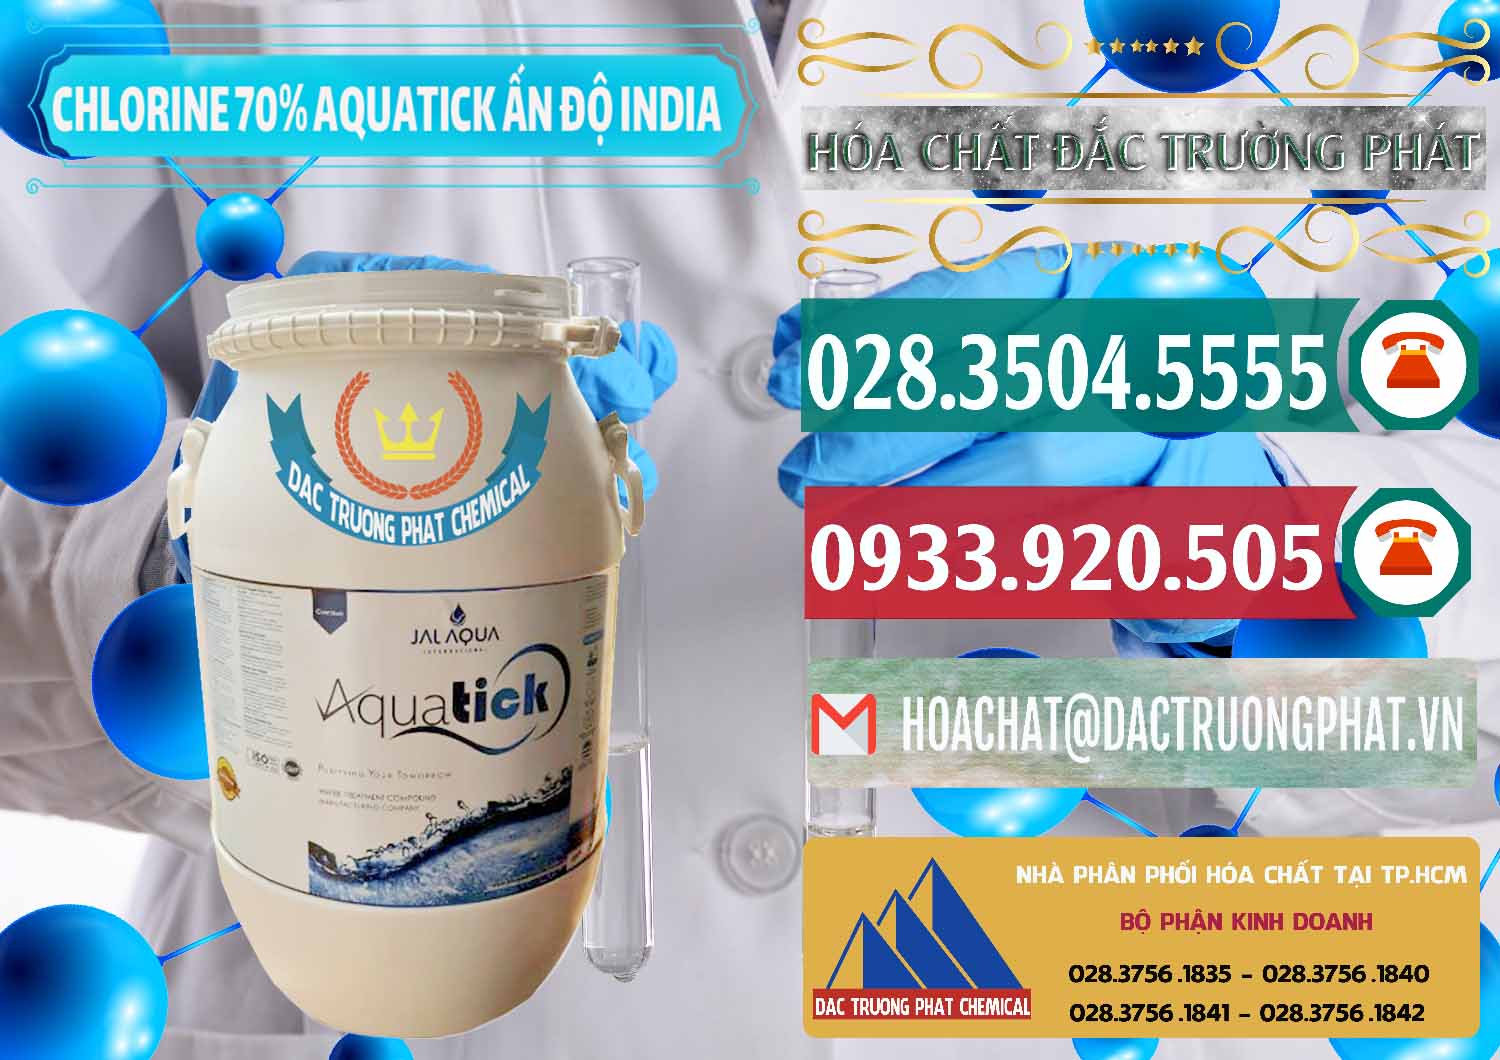 Chuyên bán - phân phối Chlorine – Clorin 70% Aquatick Jal Aqua Ấn Độ India - 0215 - Cty nhập khẩu _ phân phối hóa chất tại TP.HCM - muabanhoachat.vn